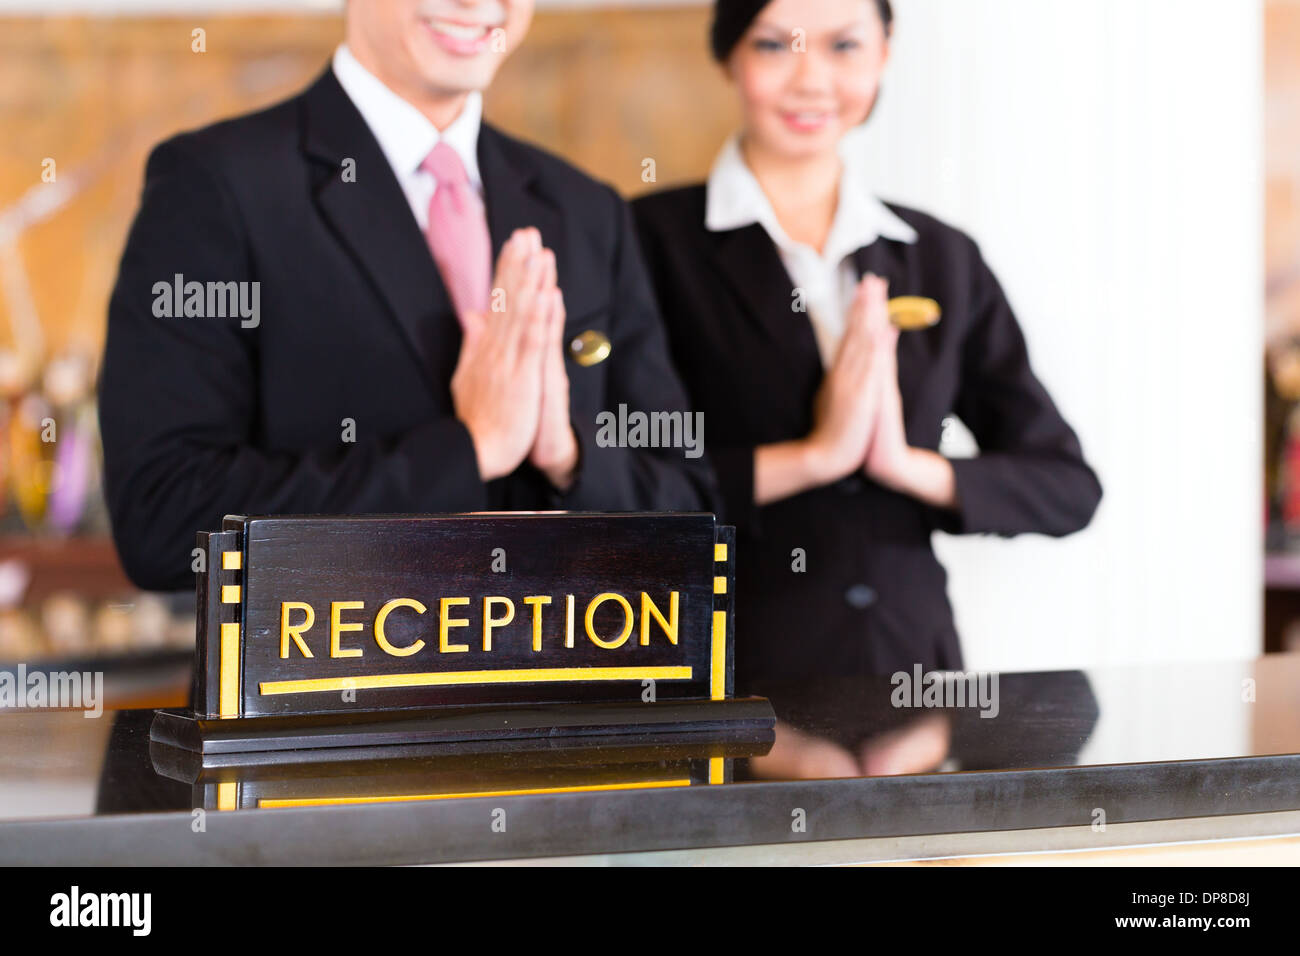 L'équipe de réception asiatique chinois à l'hôtel de luxe/24 accueille les clients avec des geste, un signe de bon service Banque D'Images